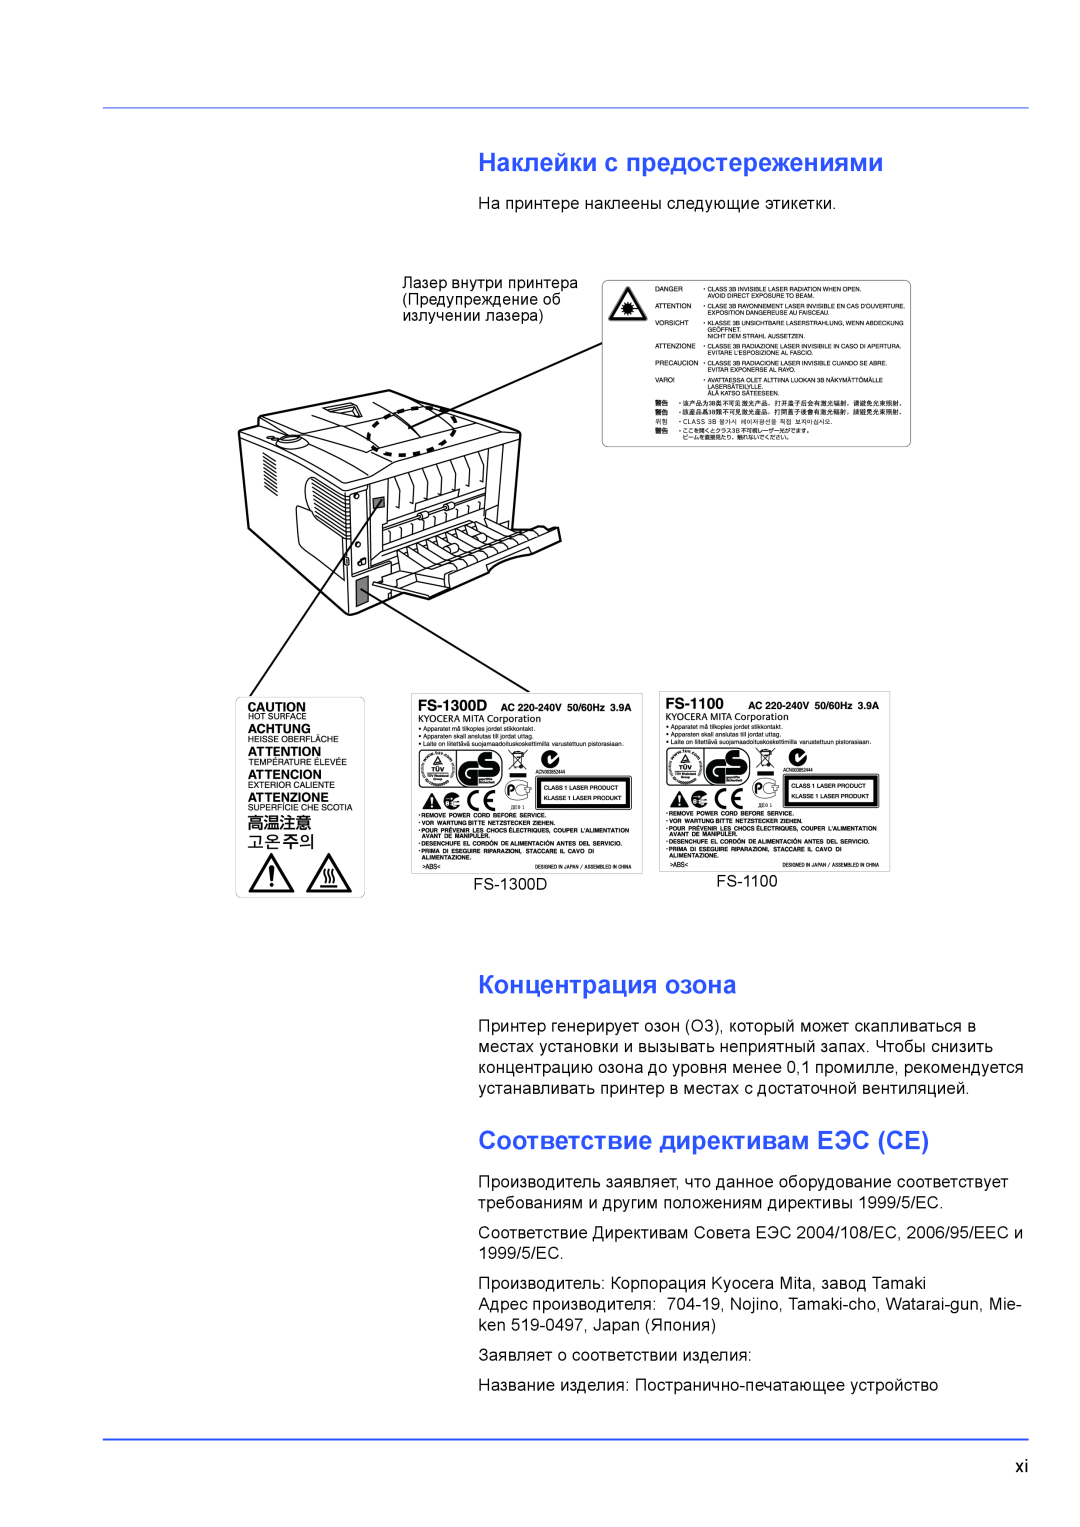 Kyocera FS-1100, FS-1300D manual Наклейки с предостережениями, Концентрация озона, Соответствие директивам ЕЭС CE 